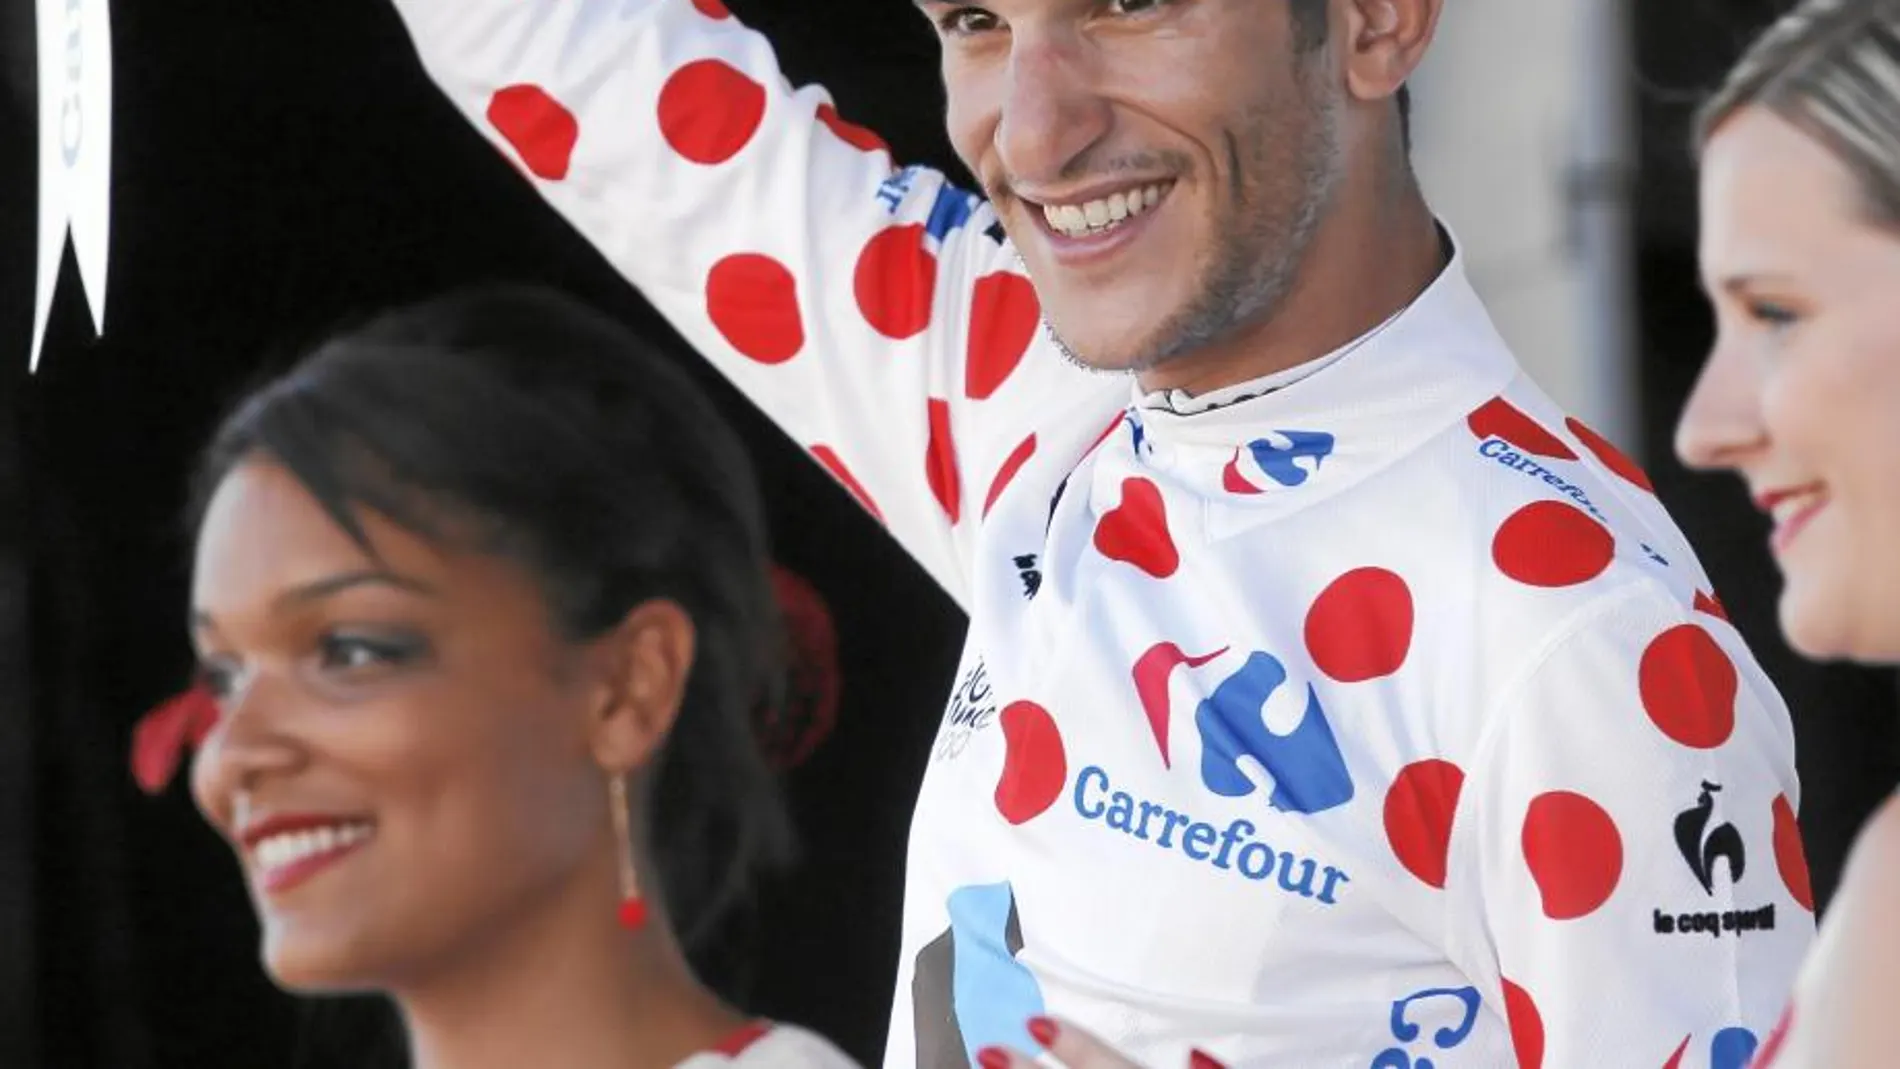 Blel Kadri es el único musulmán que está corriendo el Tour y es el nuevo líder de la montaña de la ronda francesa